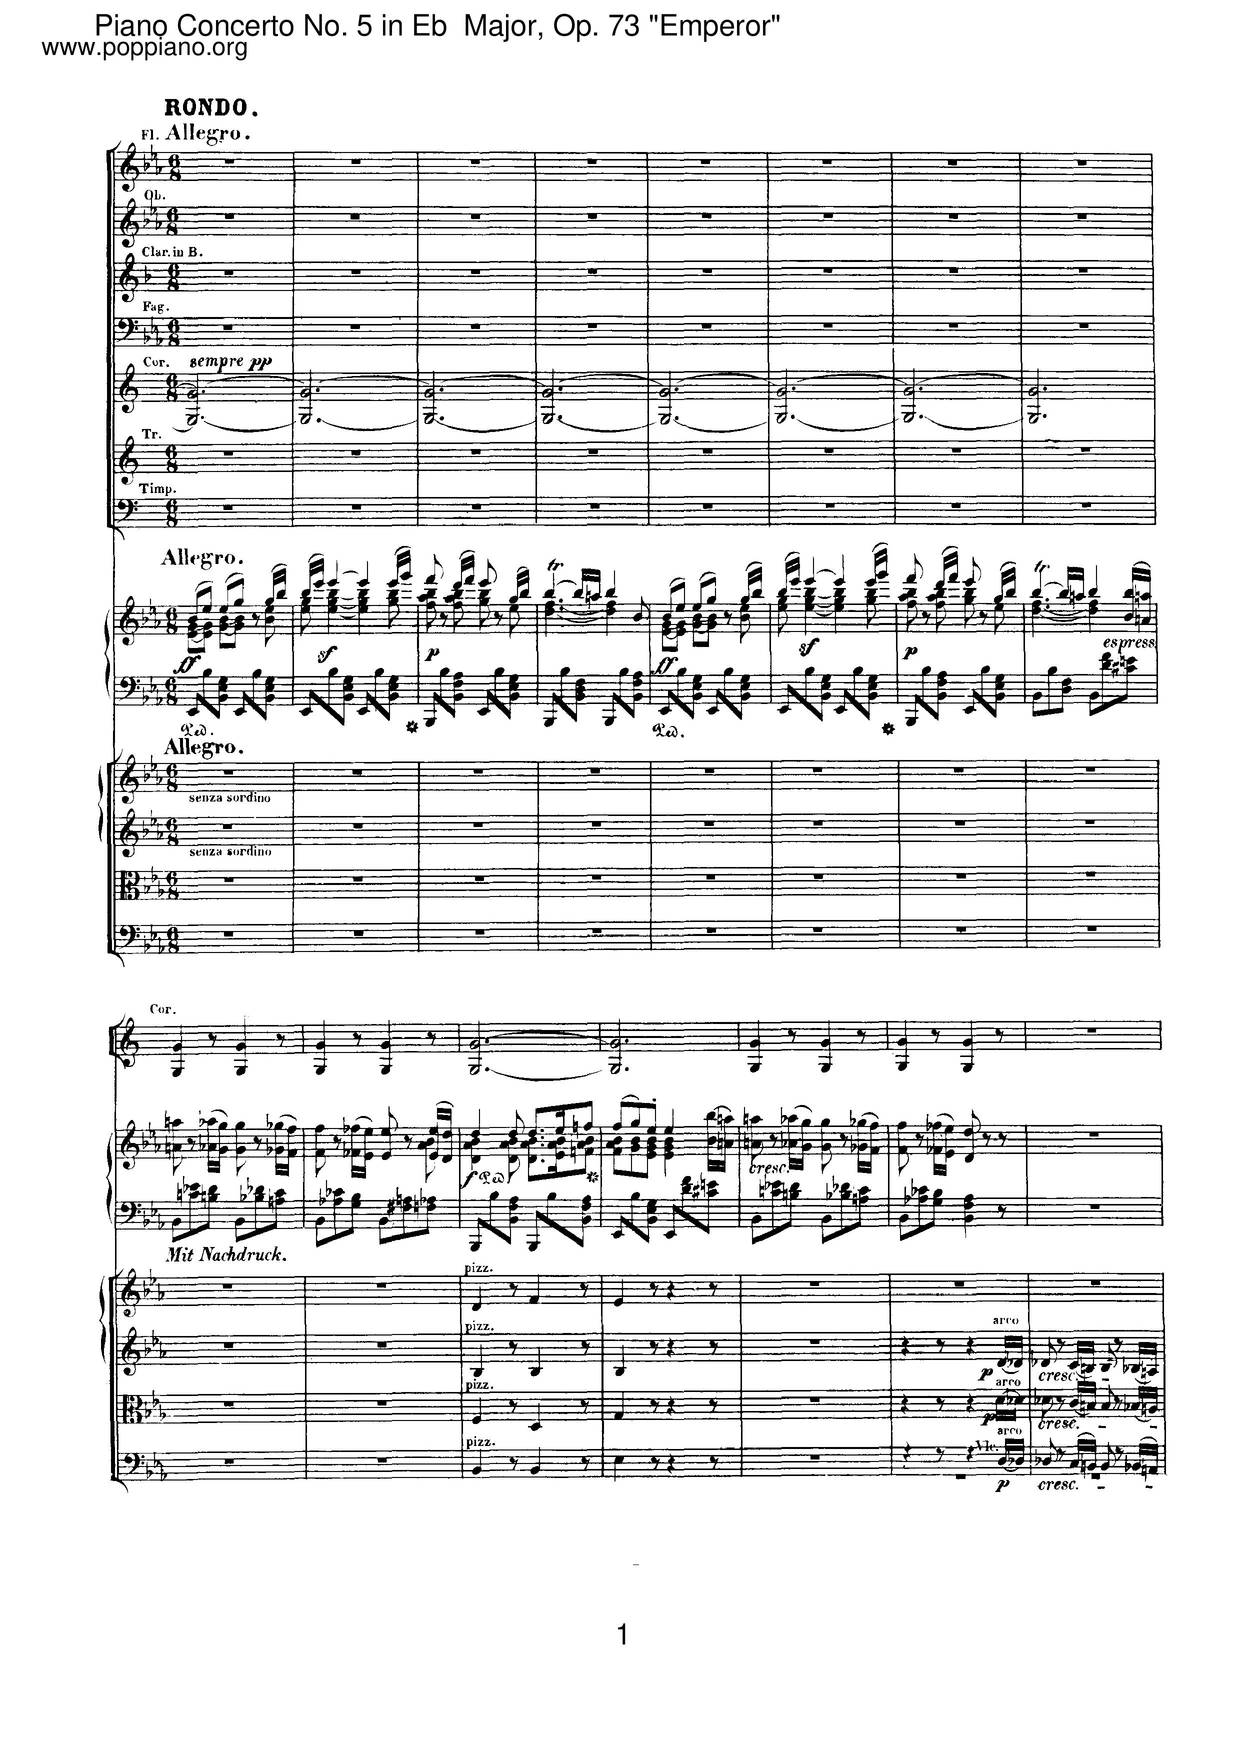 Piano Concerto No. 5 in E-Flat Major, Op. 73 Emperor: 2. Adagio un poco mosso Score